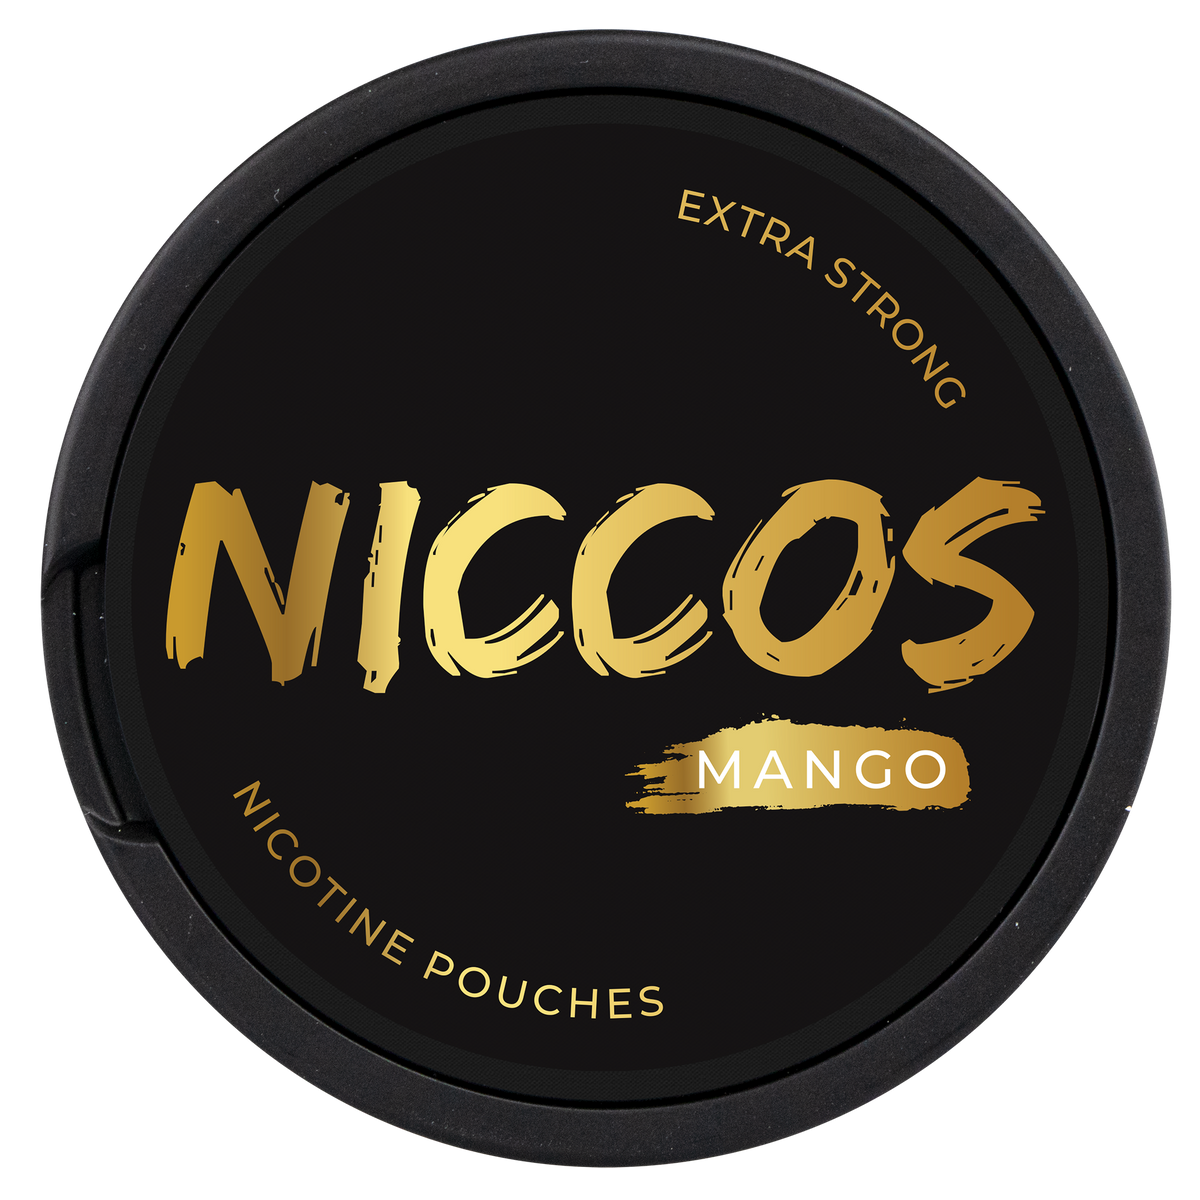 NICCOS Mango